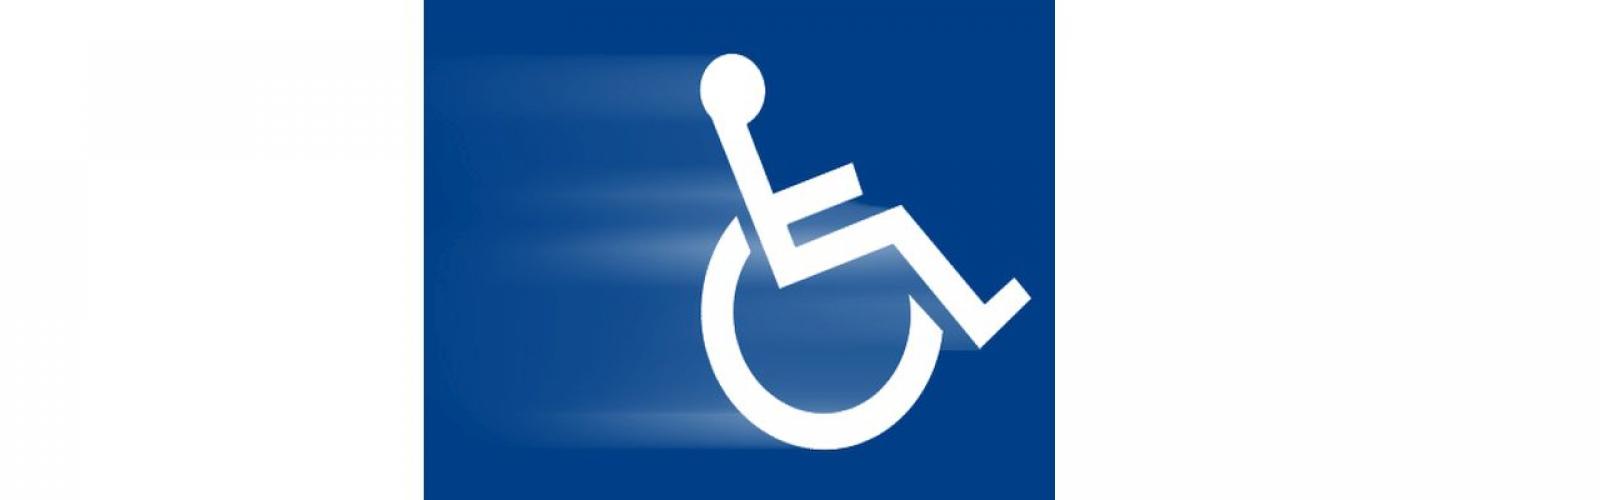 rolstoel pictogram